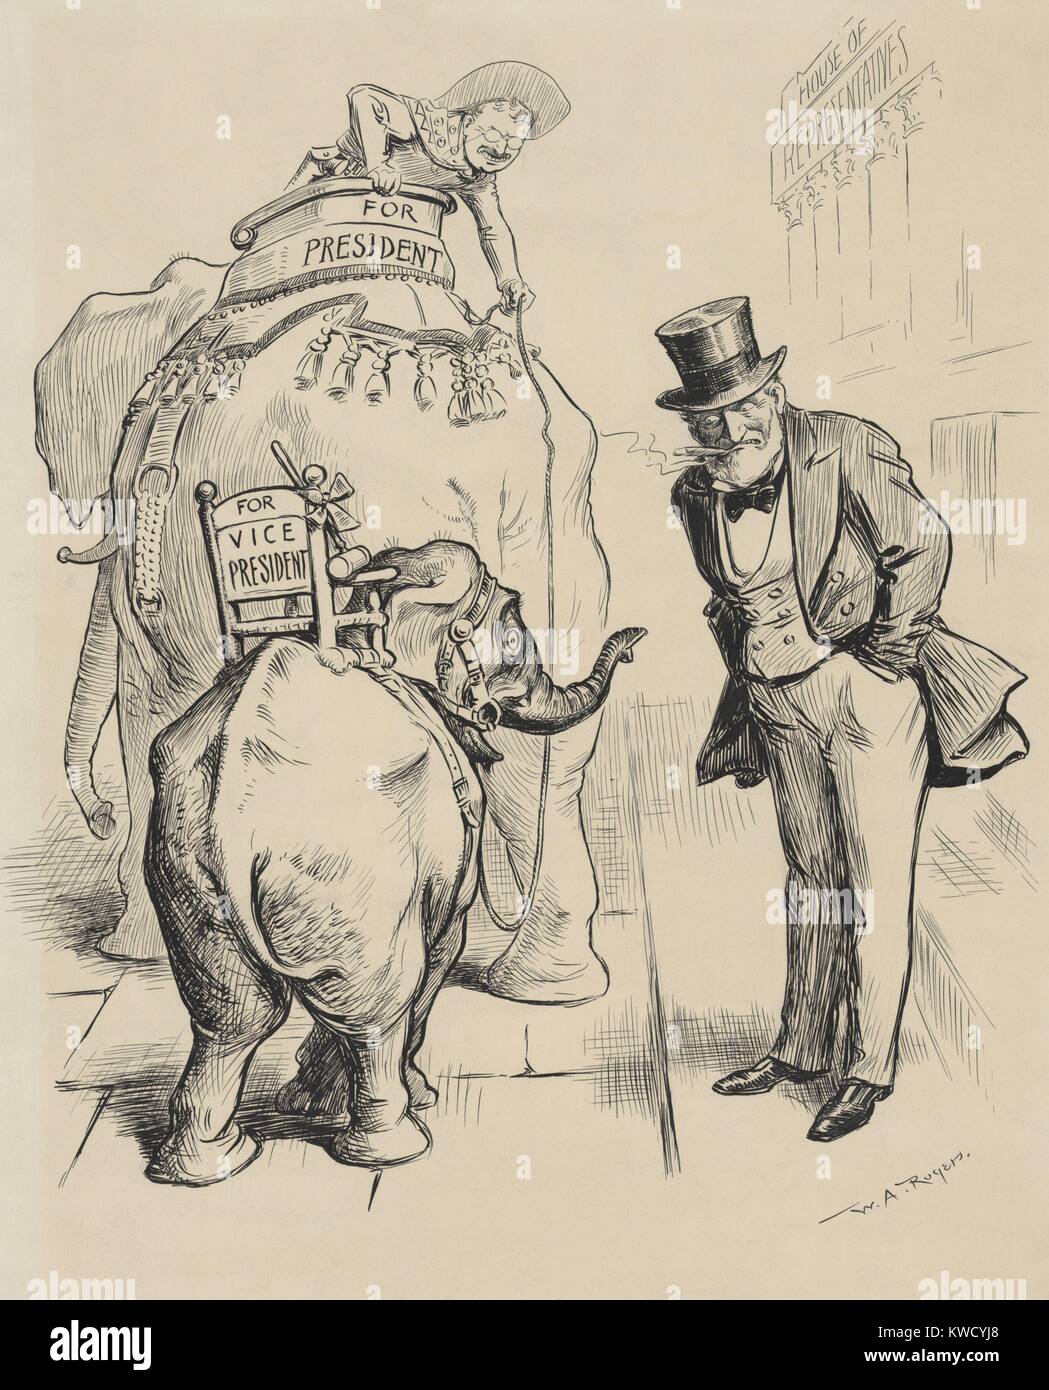 Troppo BL--KTY PICCOLO PER LO ZIO JOE, 1904 cartoon circa cannoni rifiuto della Vice Presidenza. Theodore Roosevelt su un grande elefante, non riesce ad attirare Joseph Gurney Cannon, Presidente della Camera dei Rappresentanti per essere il suo compagno di corsa (BSLOC 2017 6 25) Foto Stock